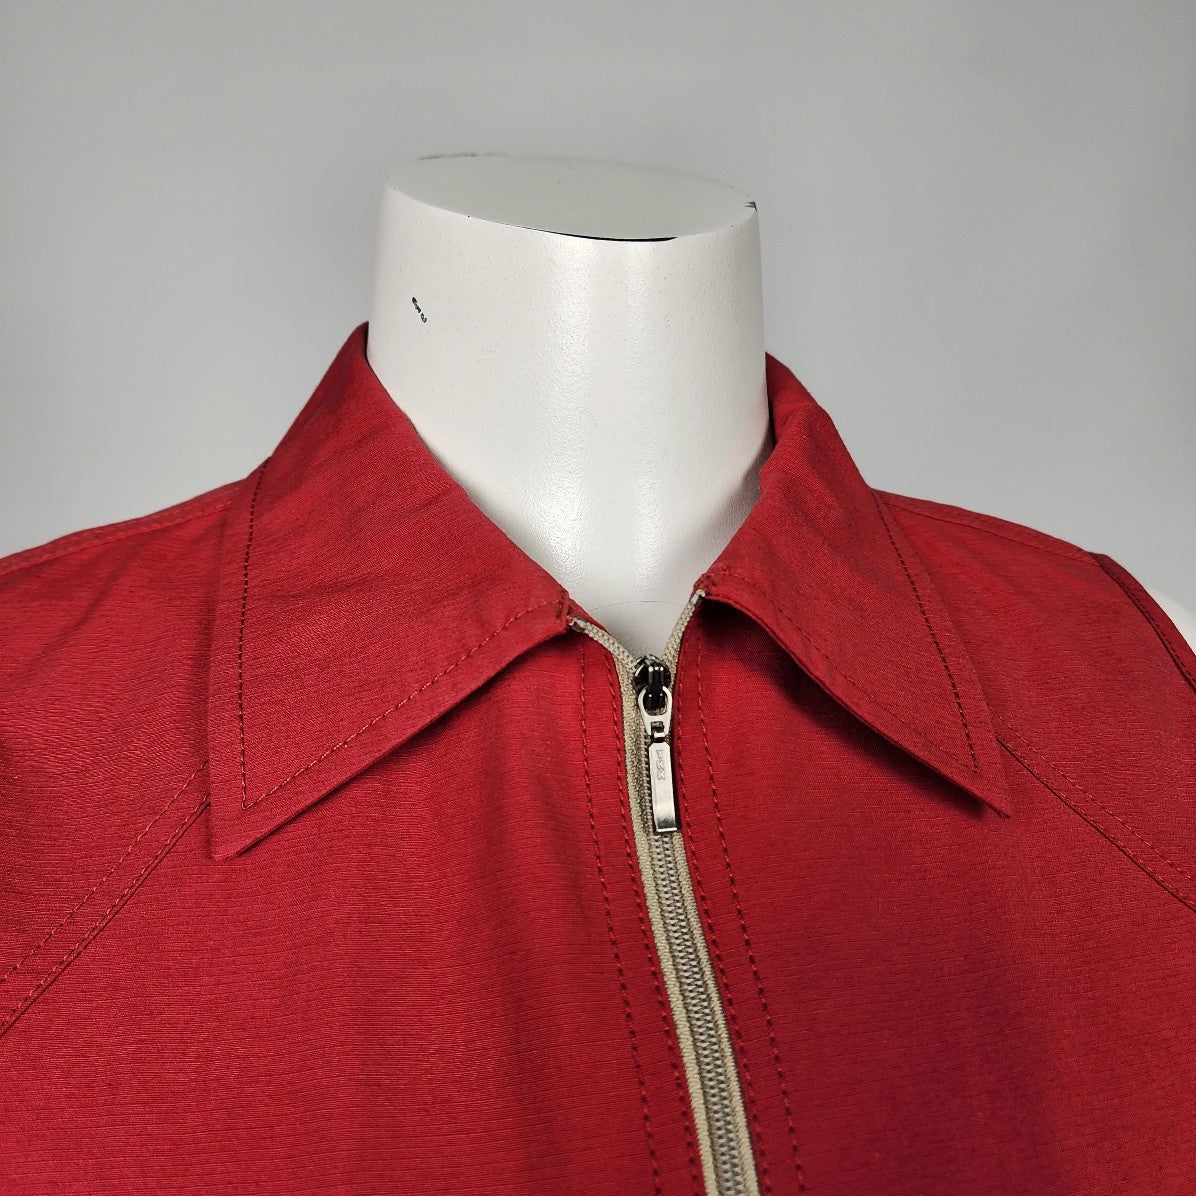 Eric Alexandre Red Cotton Blend Zip Up Vest Size S/M